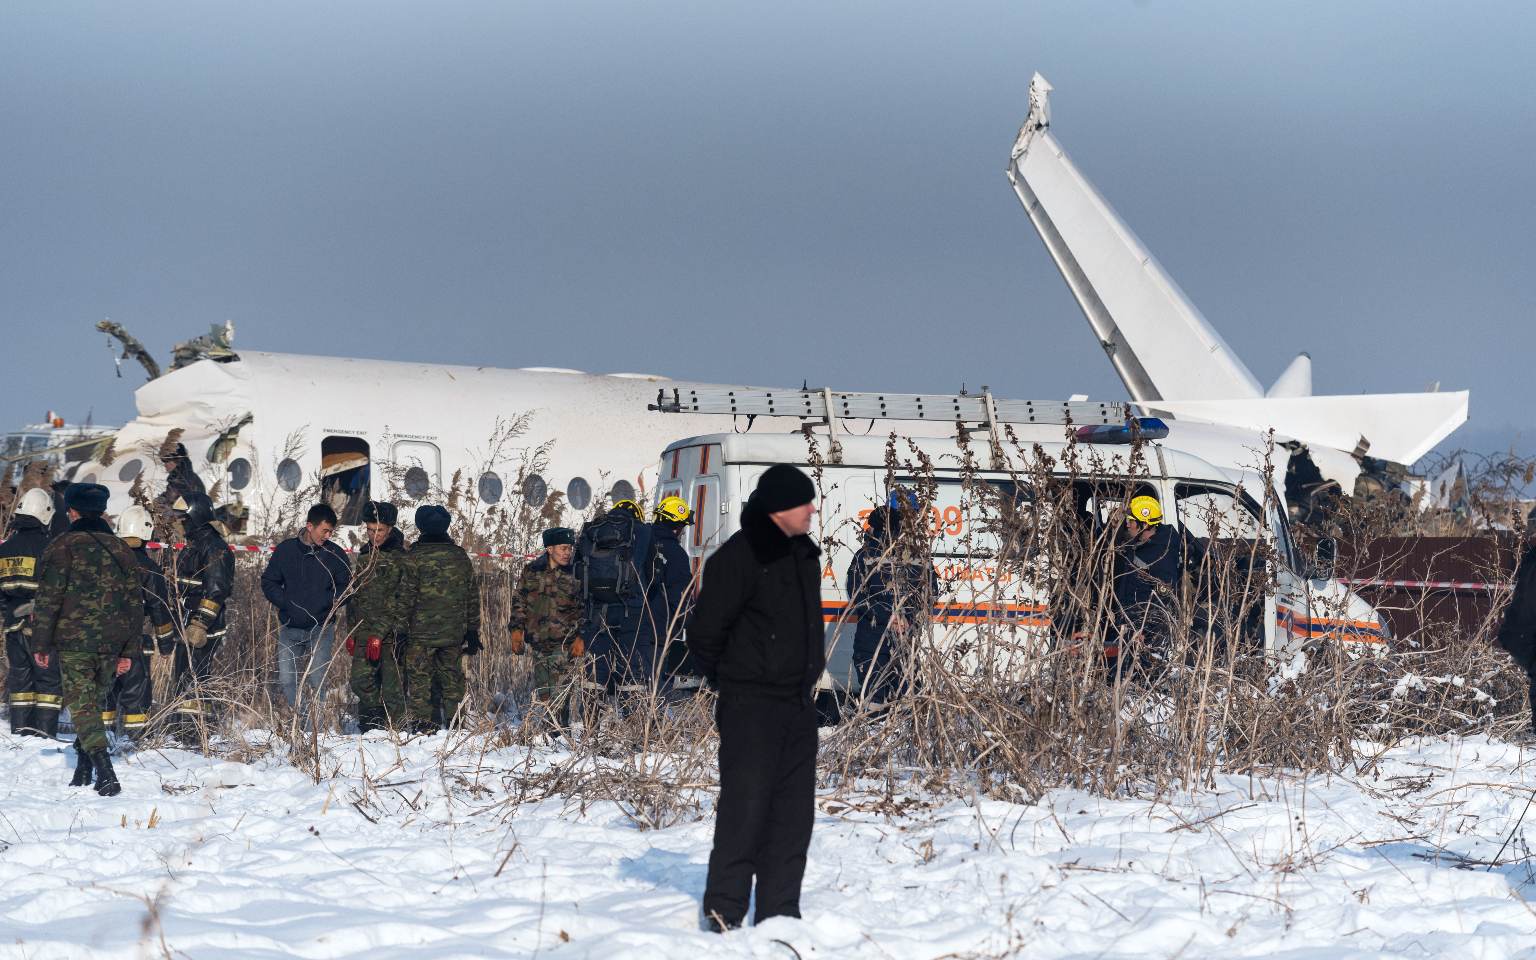 Авиакомпания назвала «спутный след» причиной падения самолета в Алма-Ате